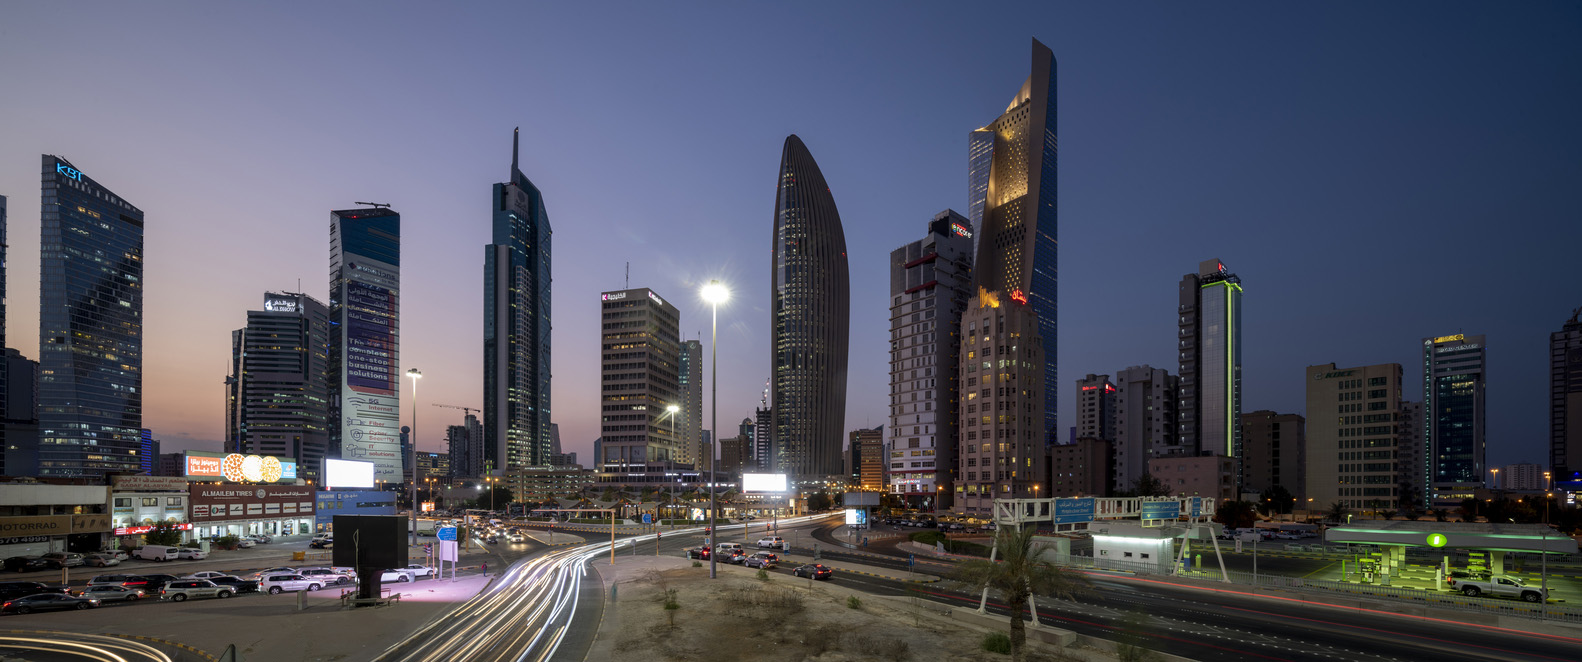 福斯特及合夥人設計作品,銀行總部建築設計案例,福斯特及合夥人建築事務所,Foster + Partners,科威特國家銀行總部,科威特,530㎡,辦公室裝修,國外企業總部辦公室設計案例